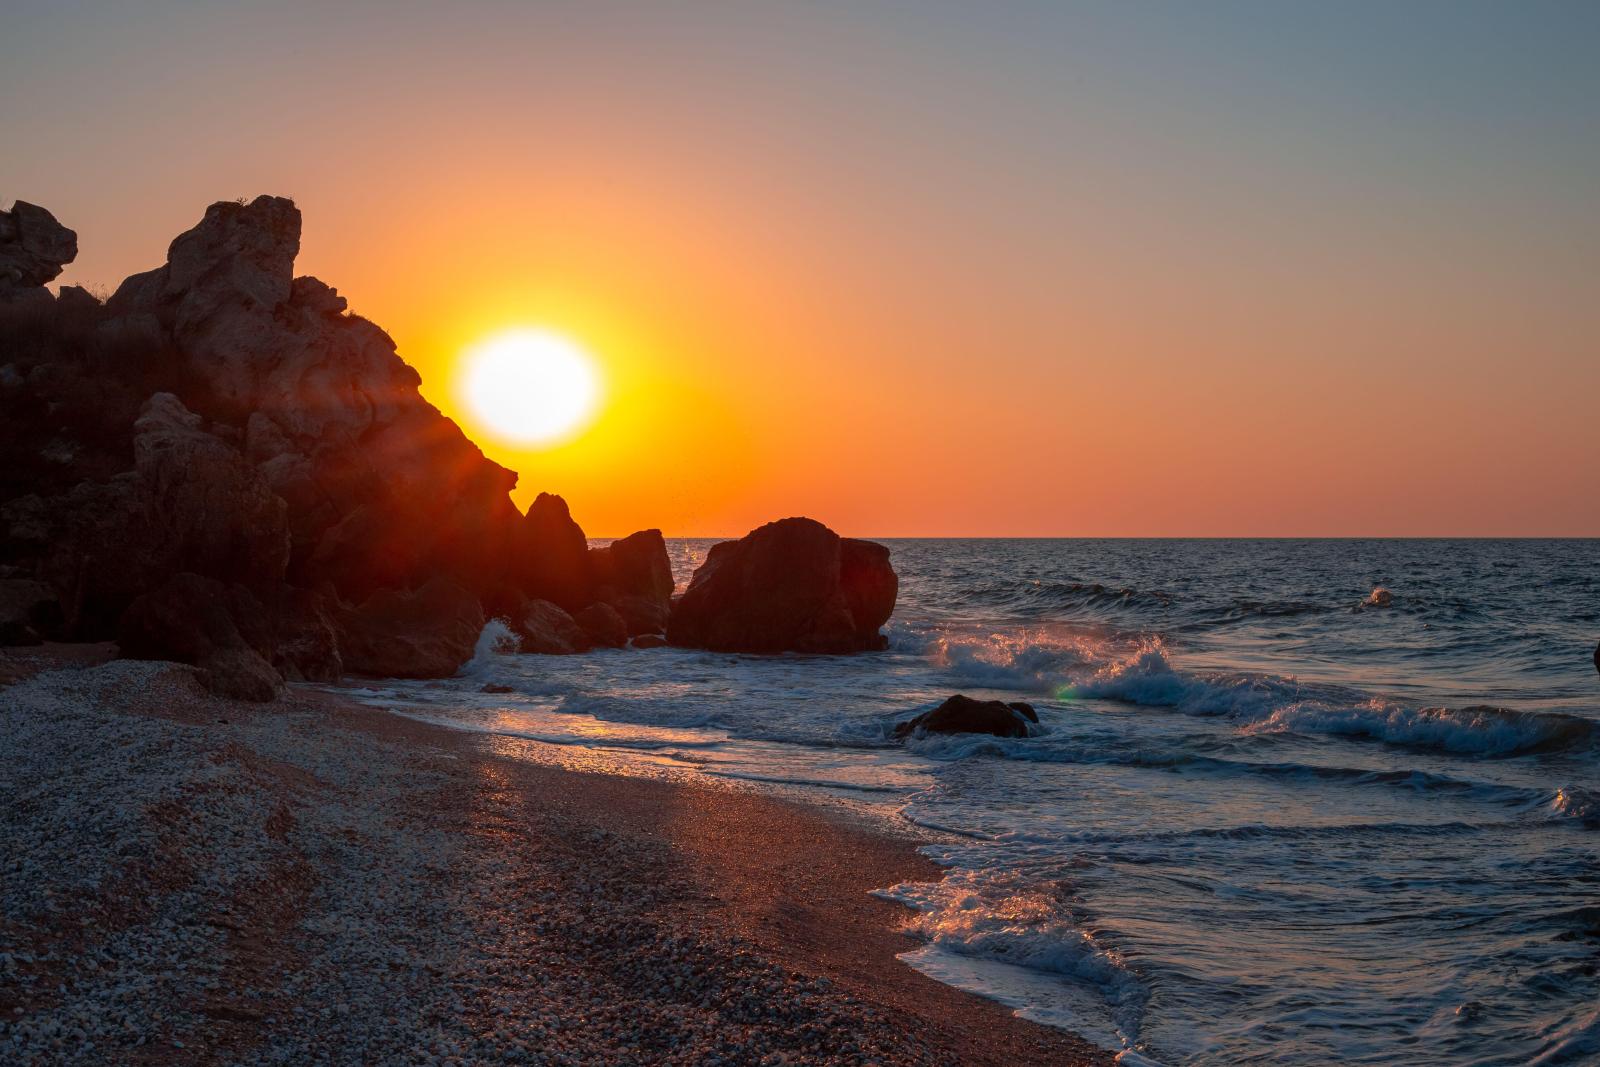 Прекрасный пляж и чистая вода: топ-3 пляжа в Крыму, которые оценят туристы по достоинству - image 1